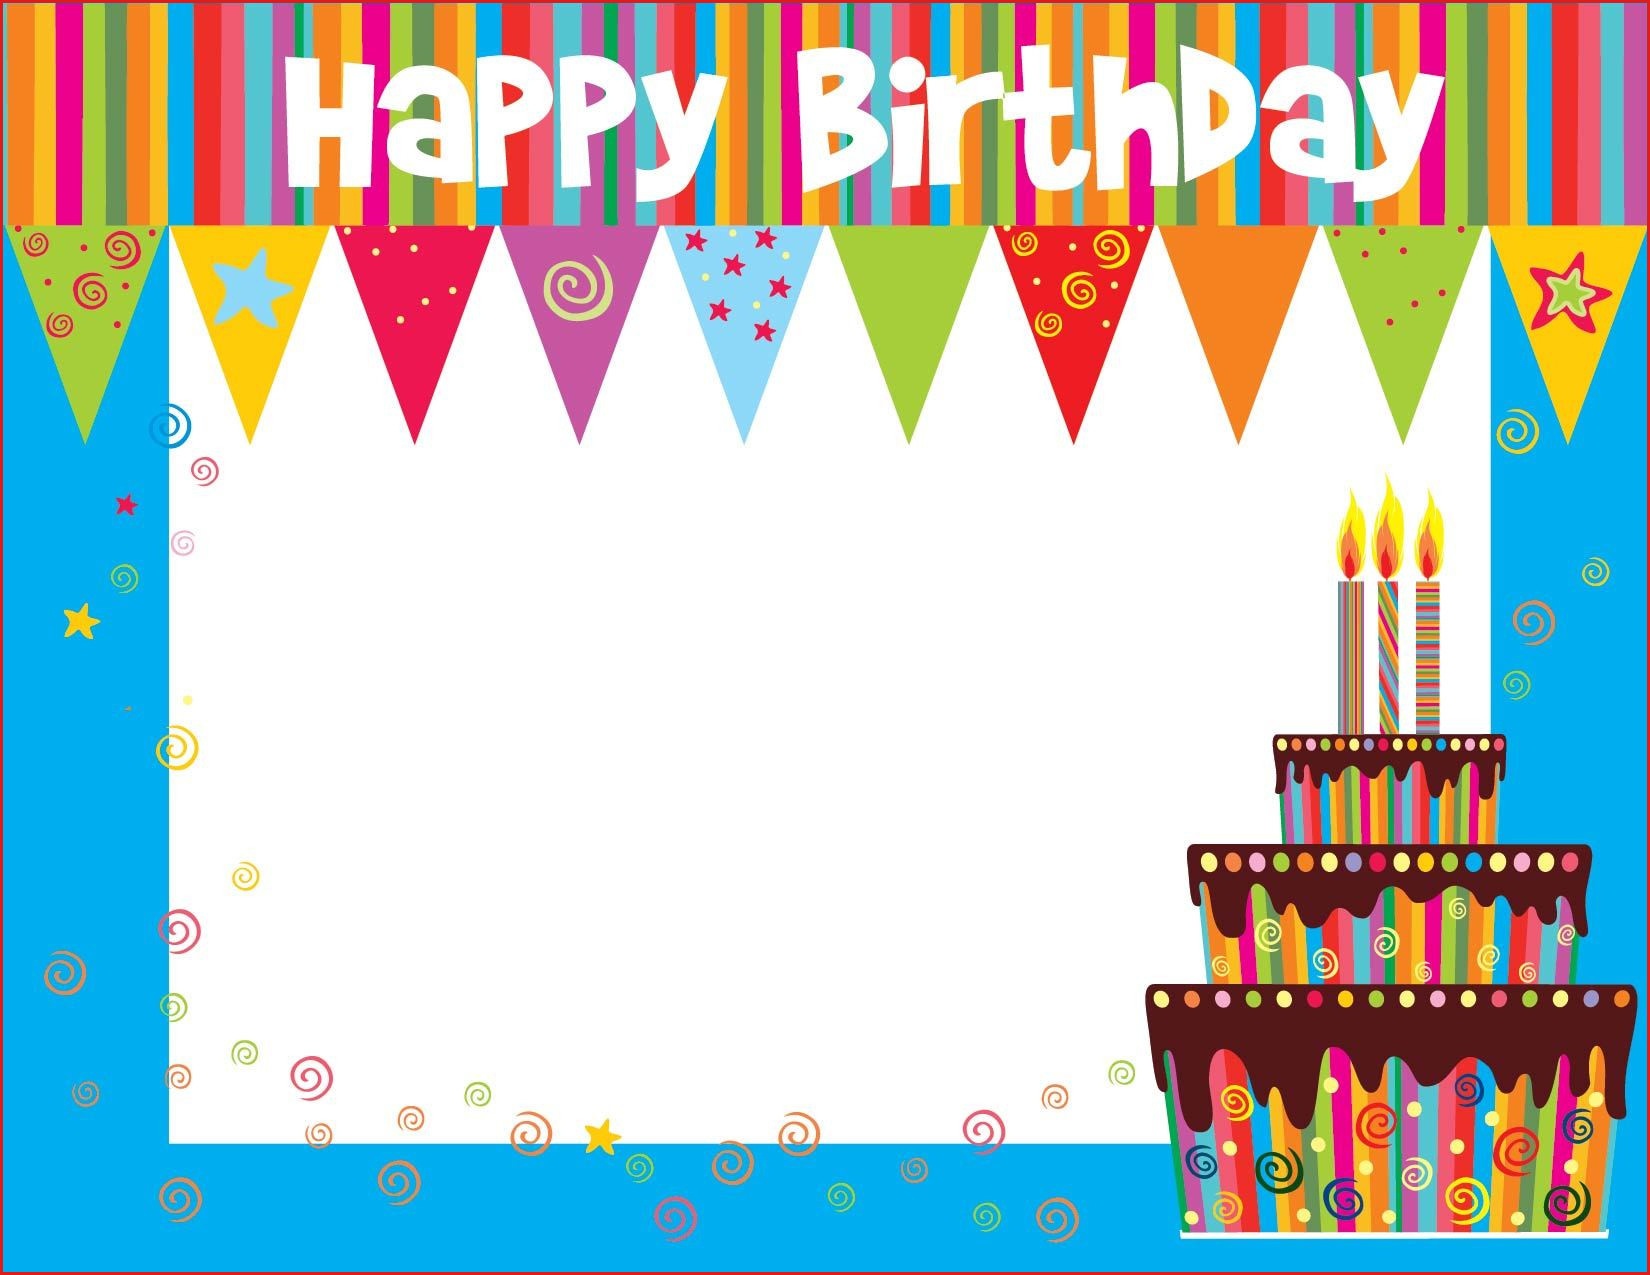 Make A Printable Birthday Card Free Printable Birthday Cards For - Free Printable Birthday Cards For Kids